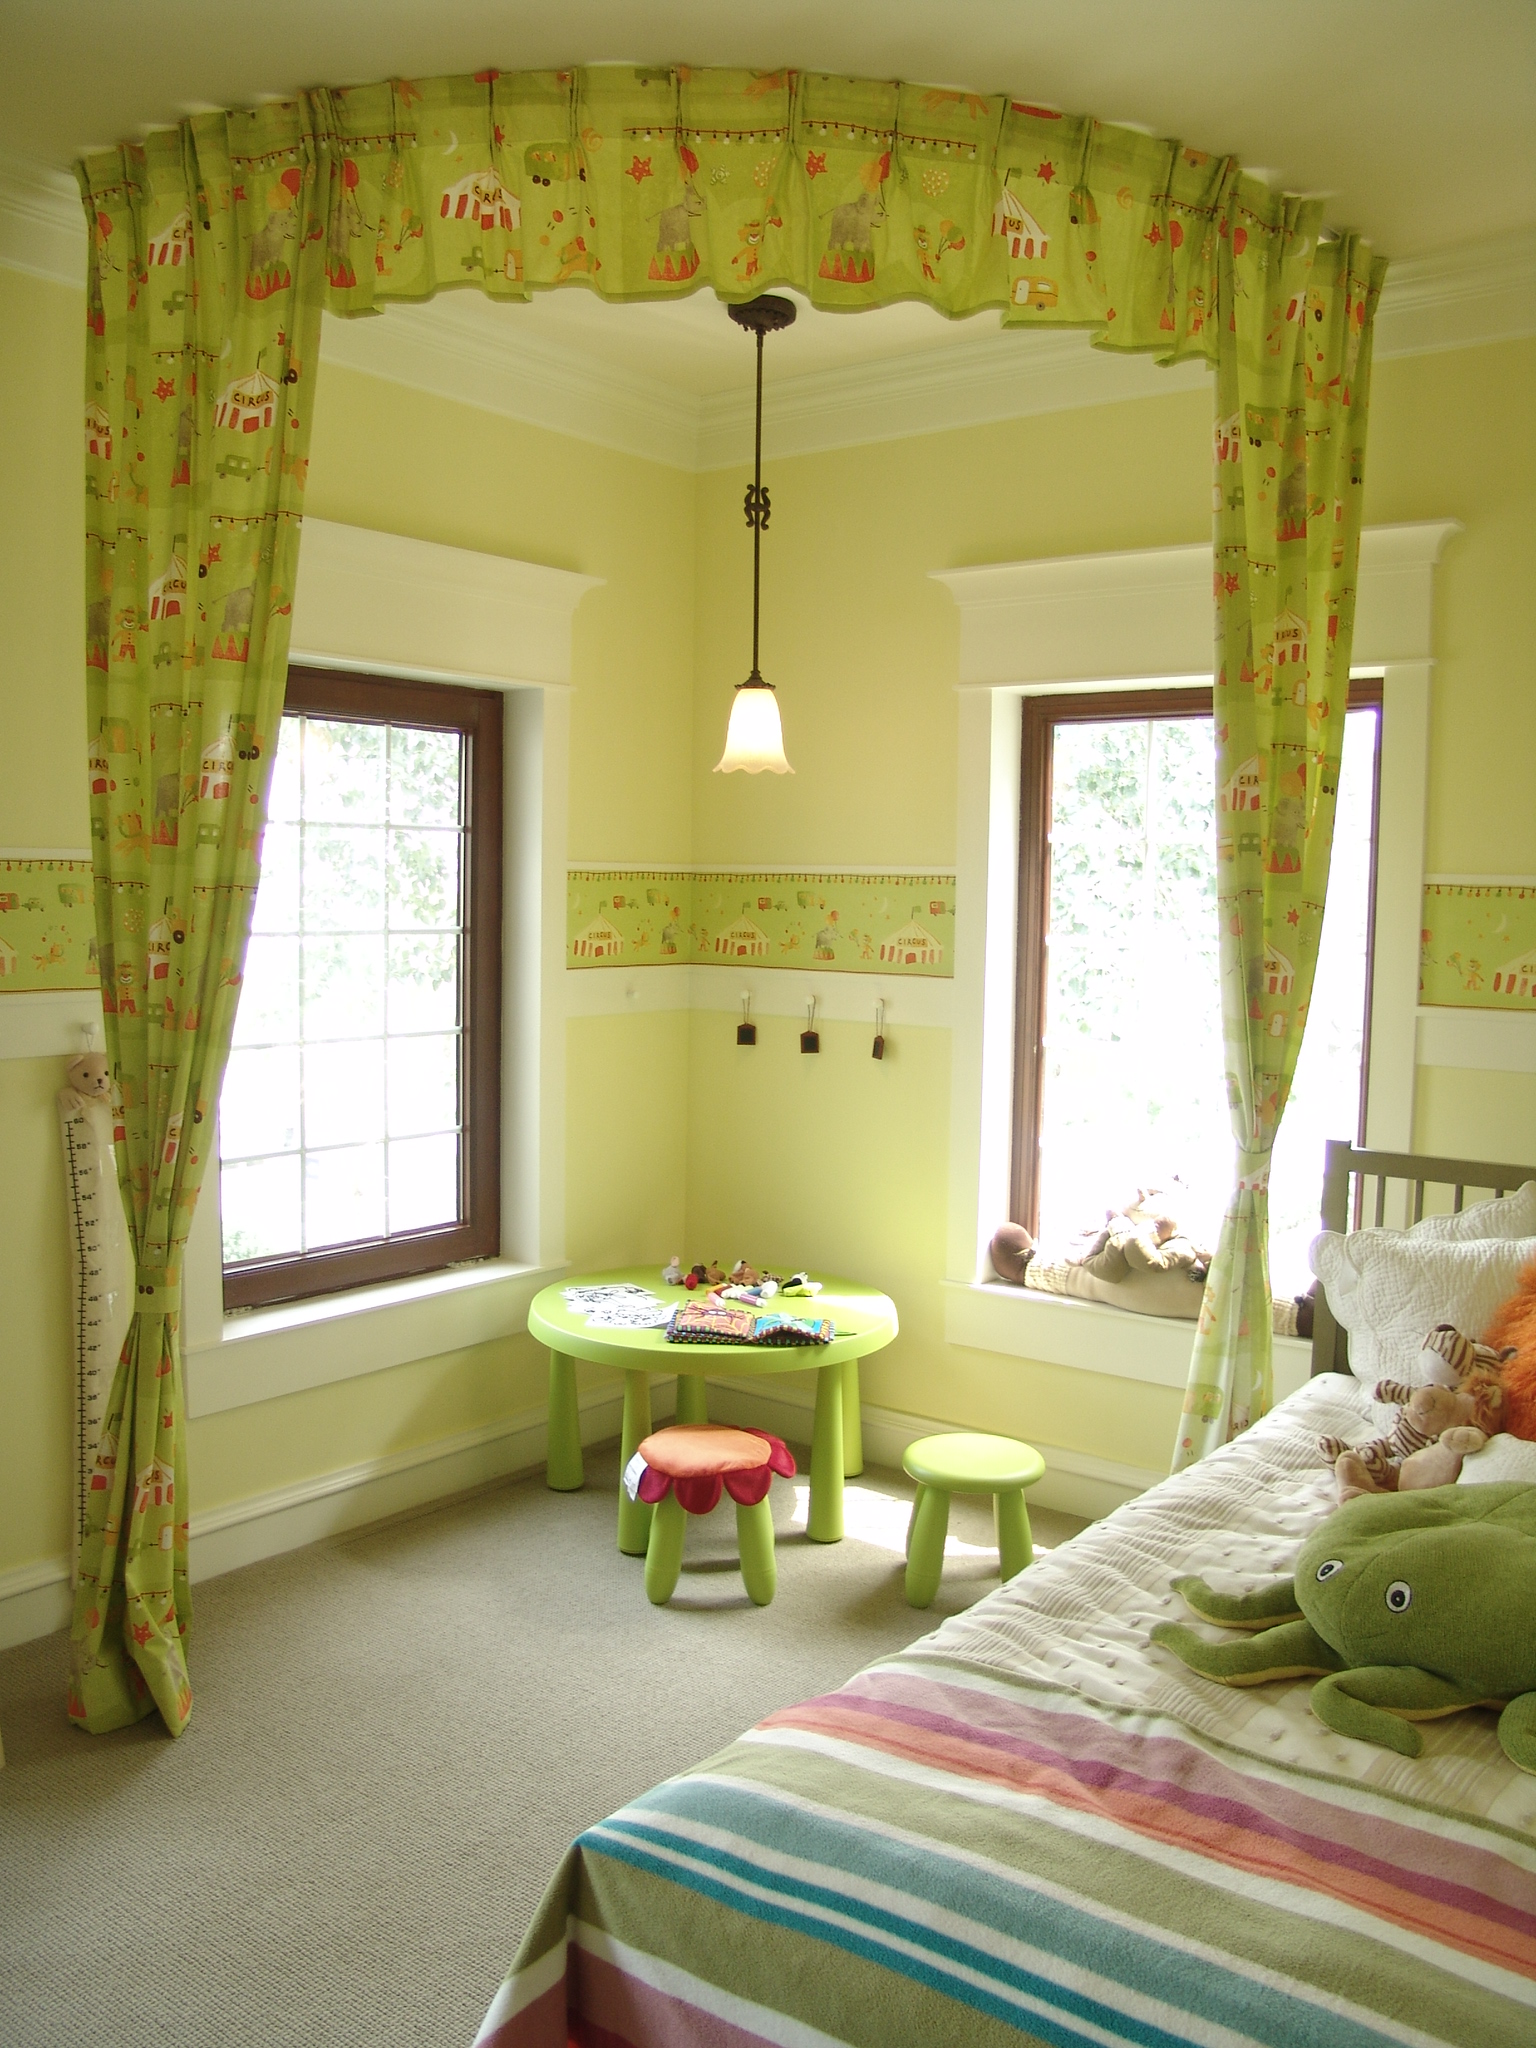 独栋别墅 新古典风格 客厅 卧室 儿童房图片来自装饰装修-18818806853在优雅温馨的家古典风格300平独栋的分享